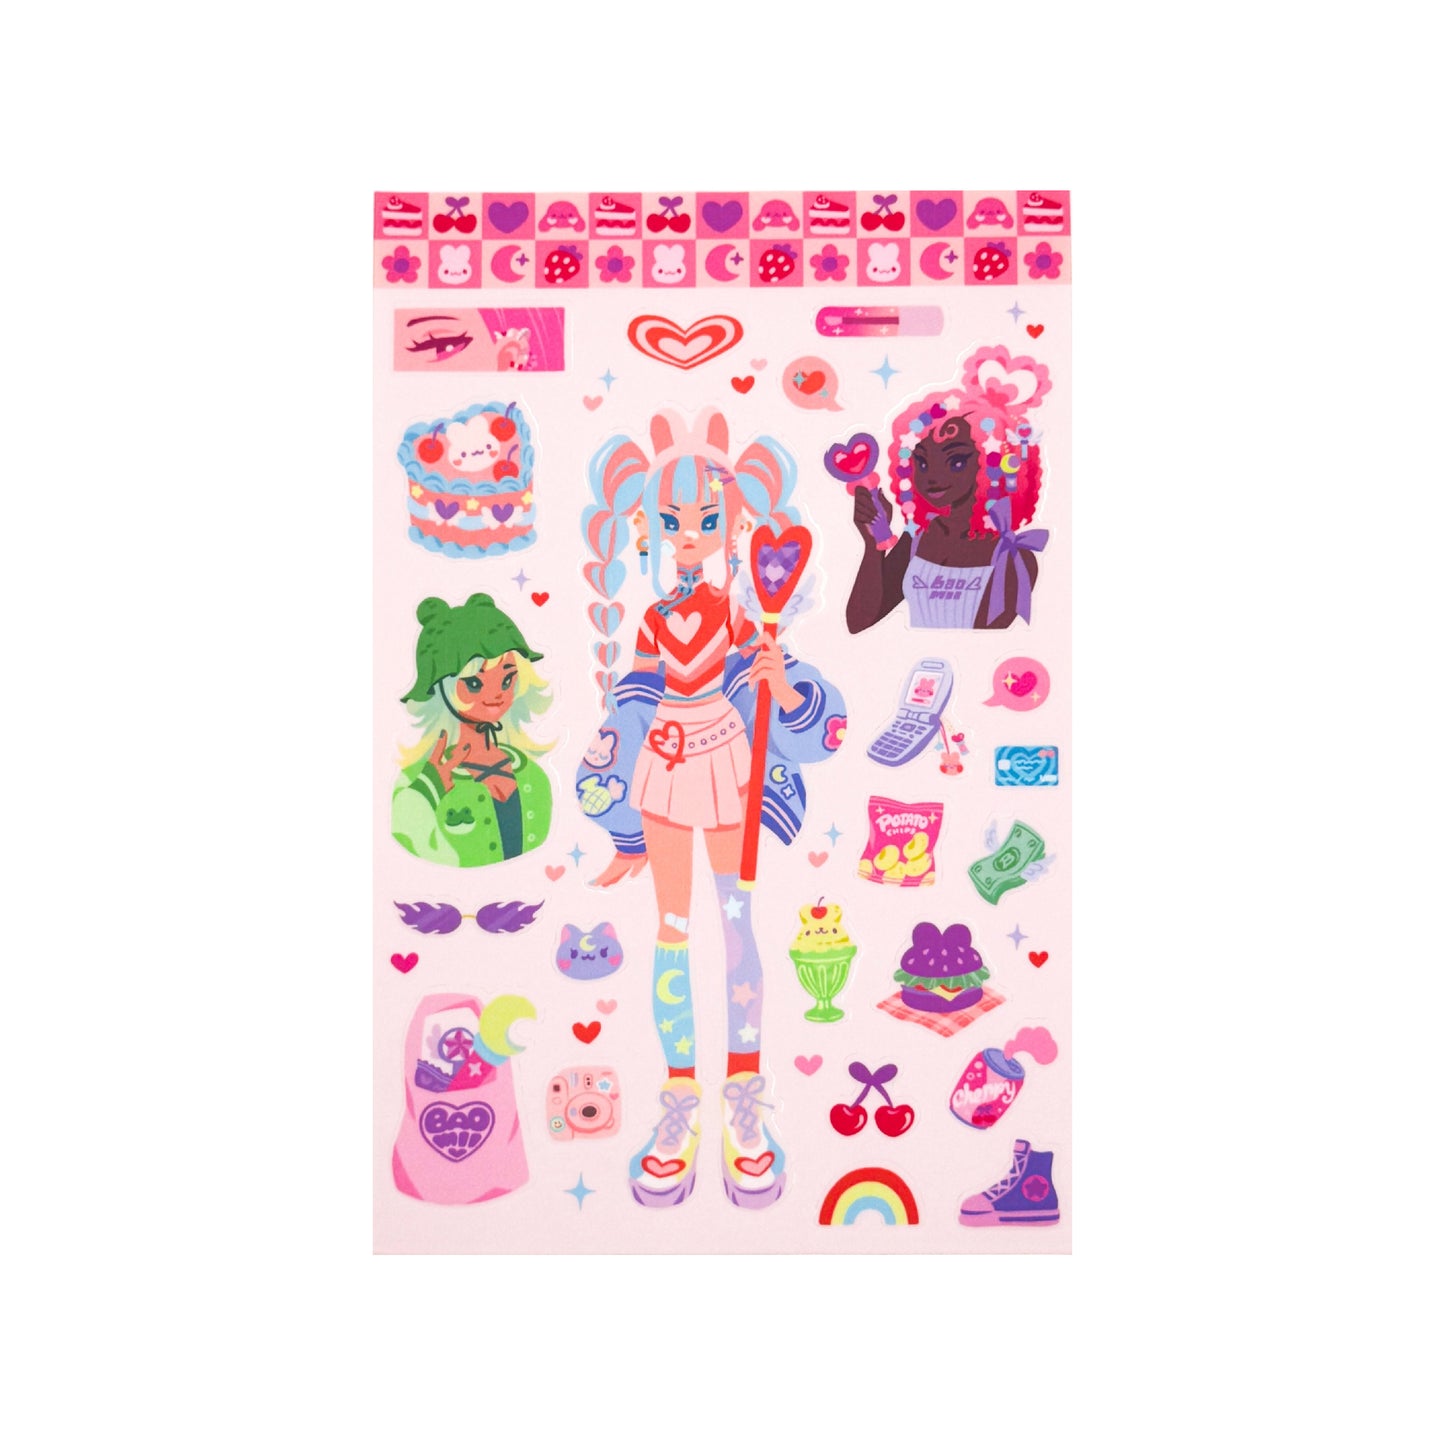 Magical Girls Sticker Sheet